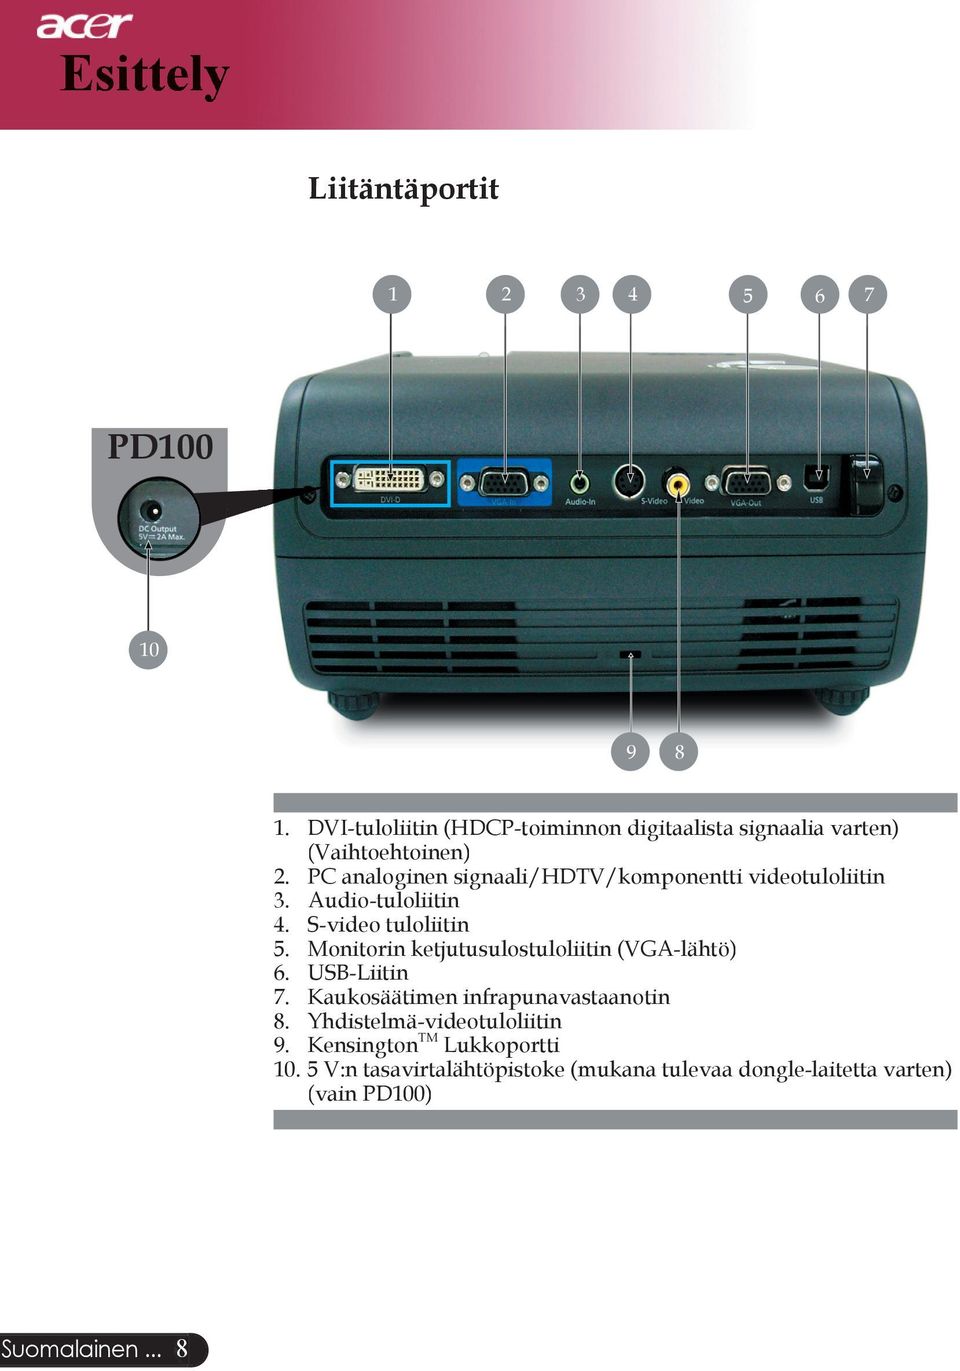 PC analoginen signaali/hdtv/komponentti videotuloliitin 3. Audio-tuloliitin 4. S-video tuloliitin 5.